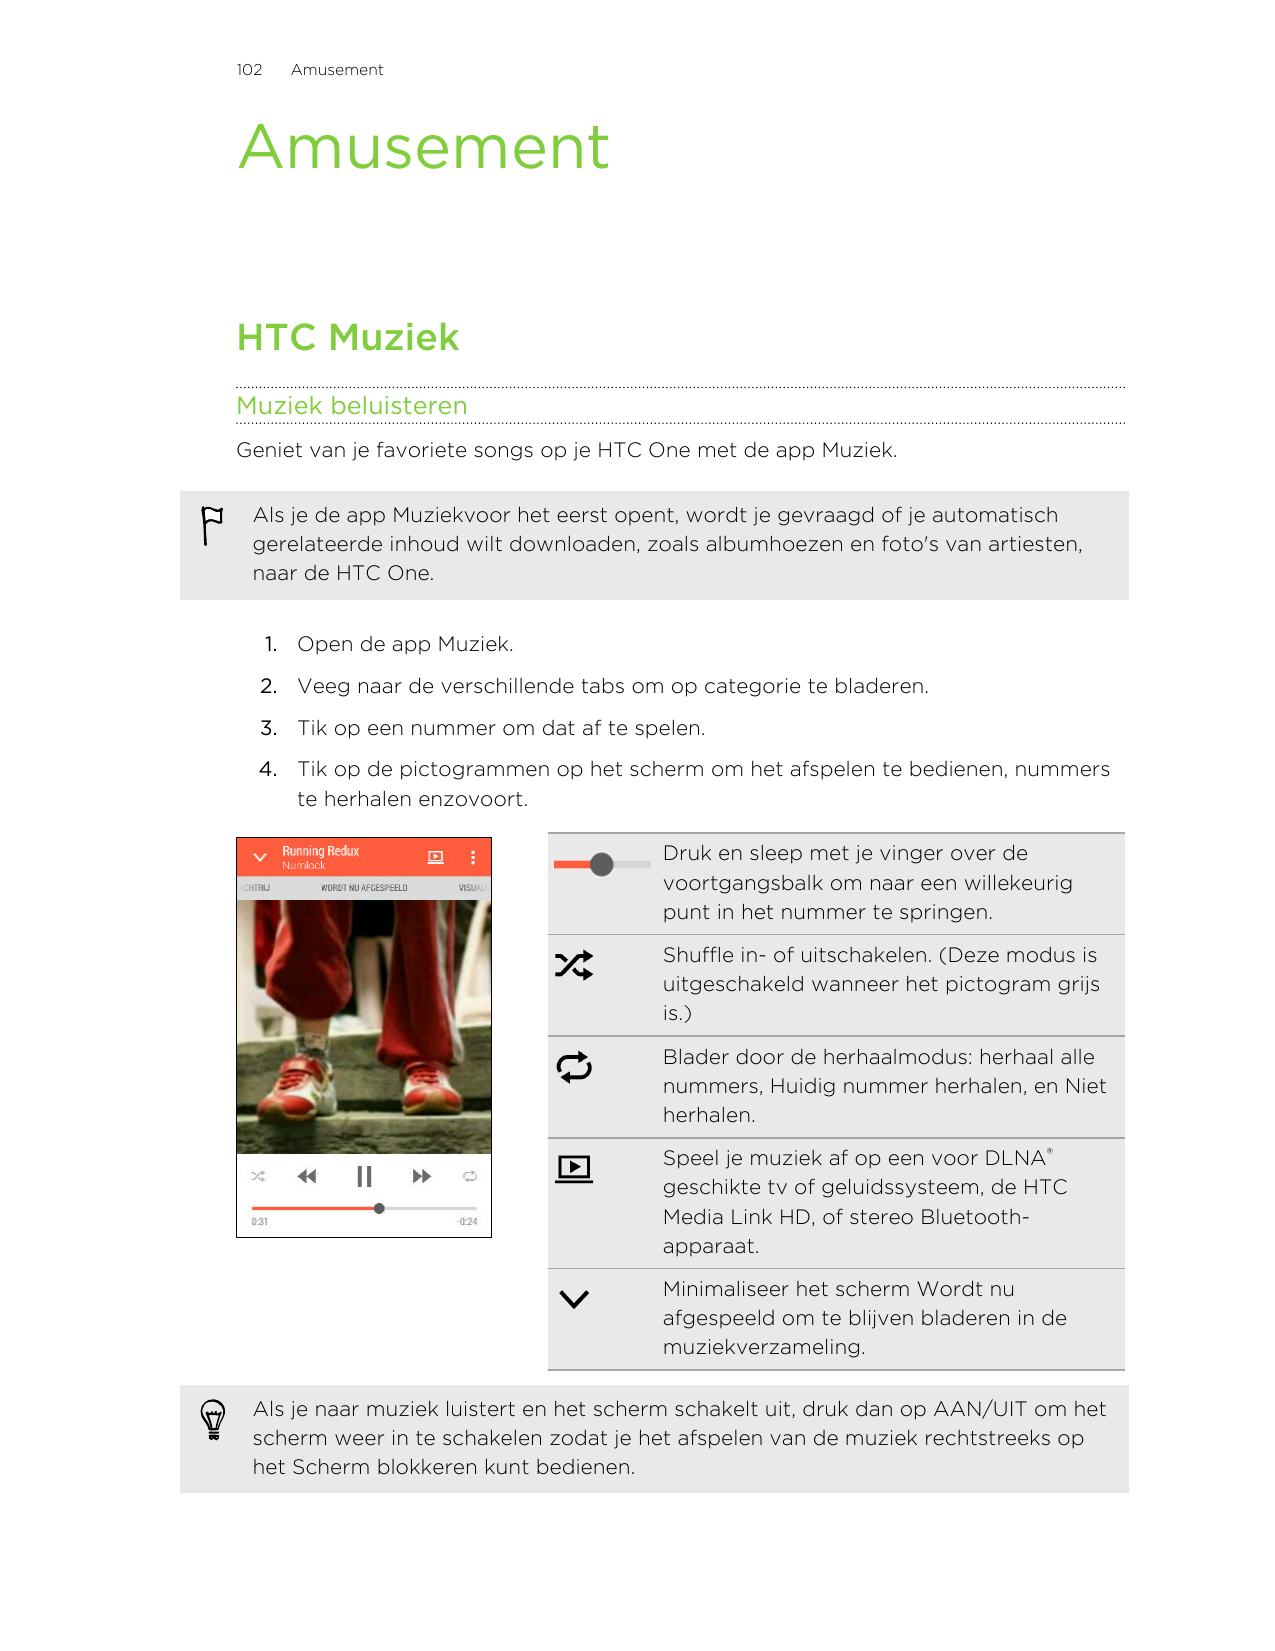 102AmusementAmusementHTC MuziekMuziek beluisterenGeniet van je favoriete songs op je HTC One met de app Muziek.Als je de app Muz